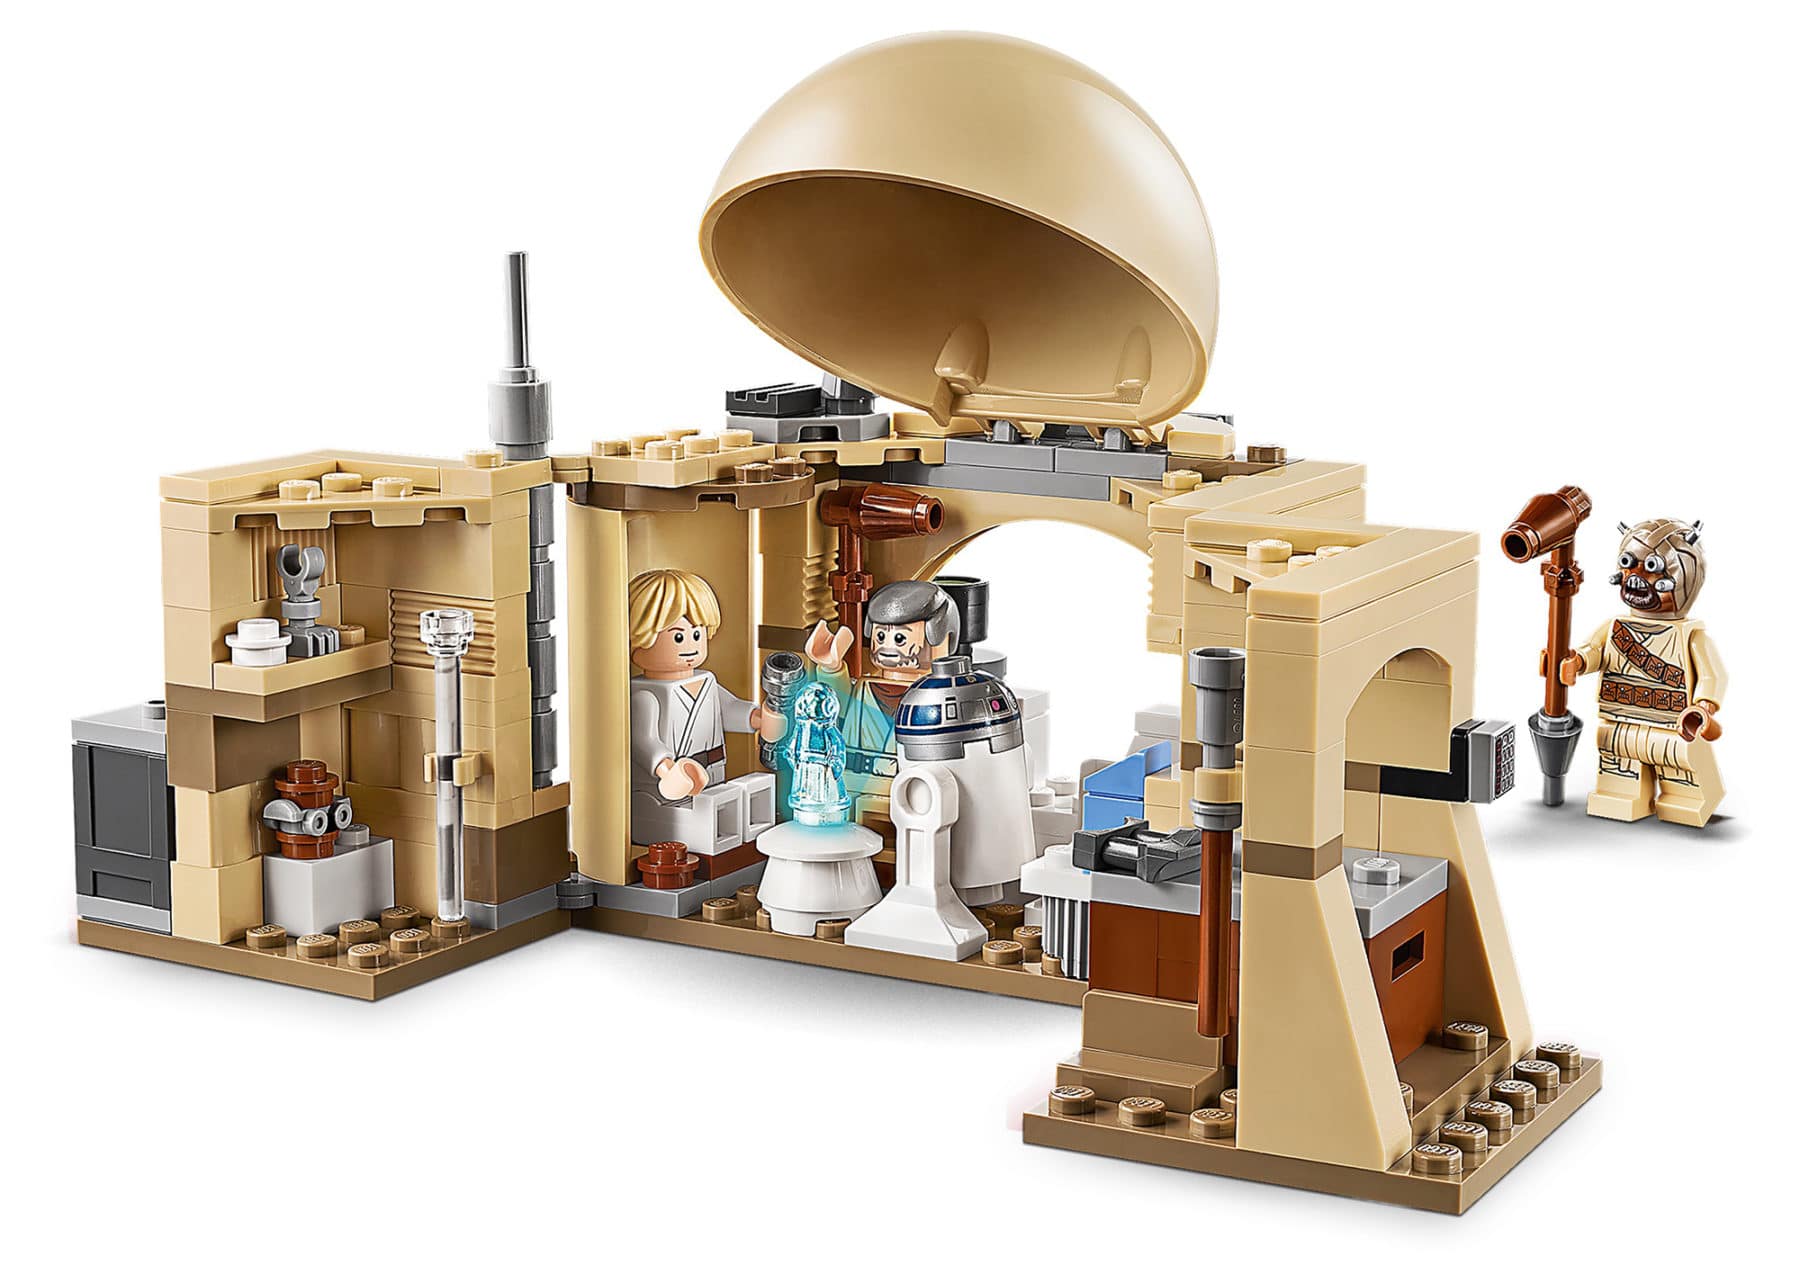 LEGO Star Wars 75270 Obi Wans Hut